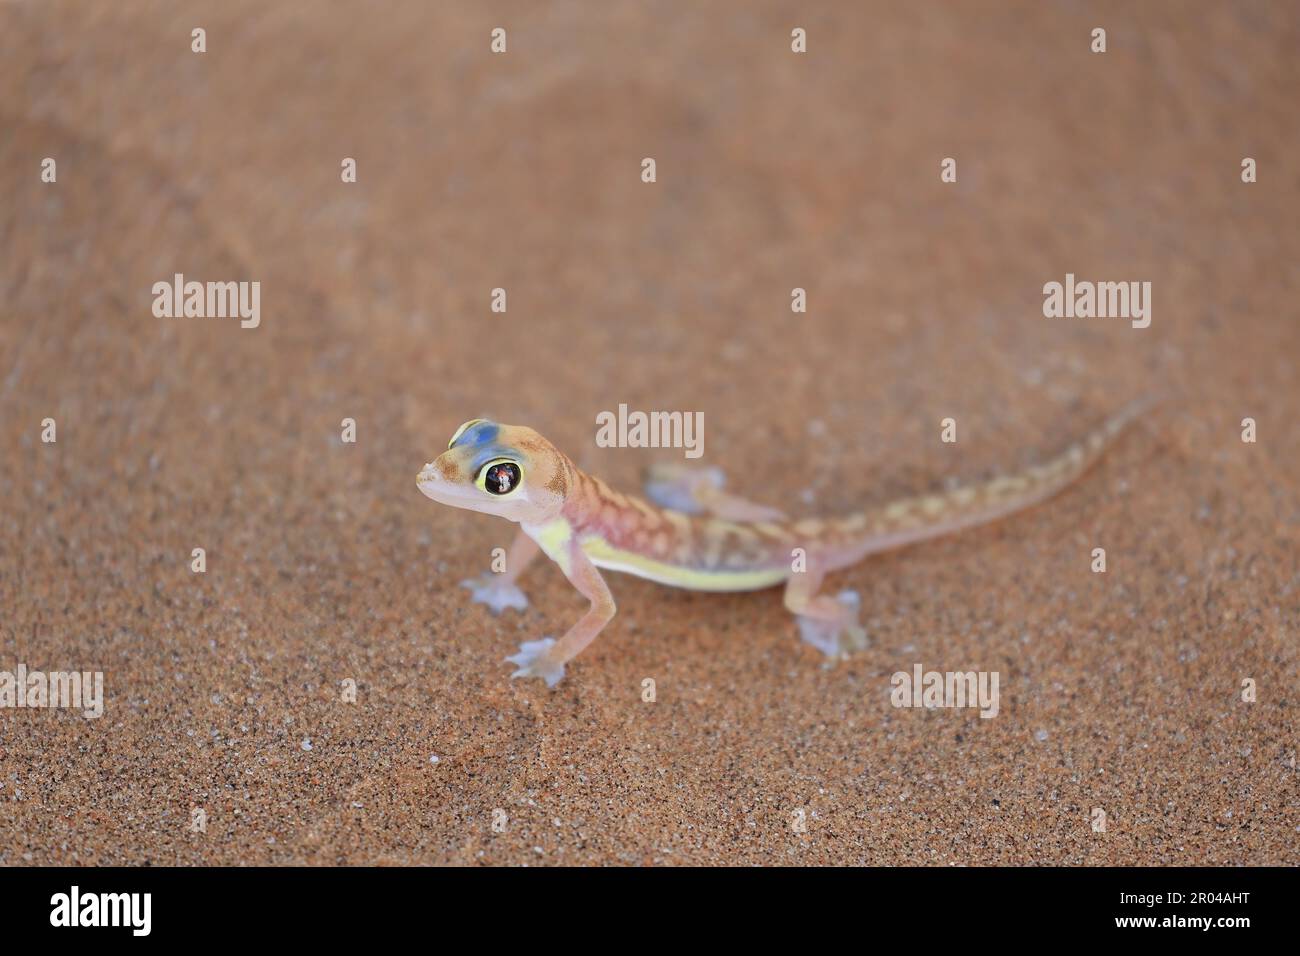 Gros plan d'un Namib Dune Gecko Banque D'Images